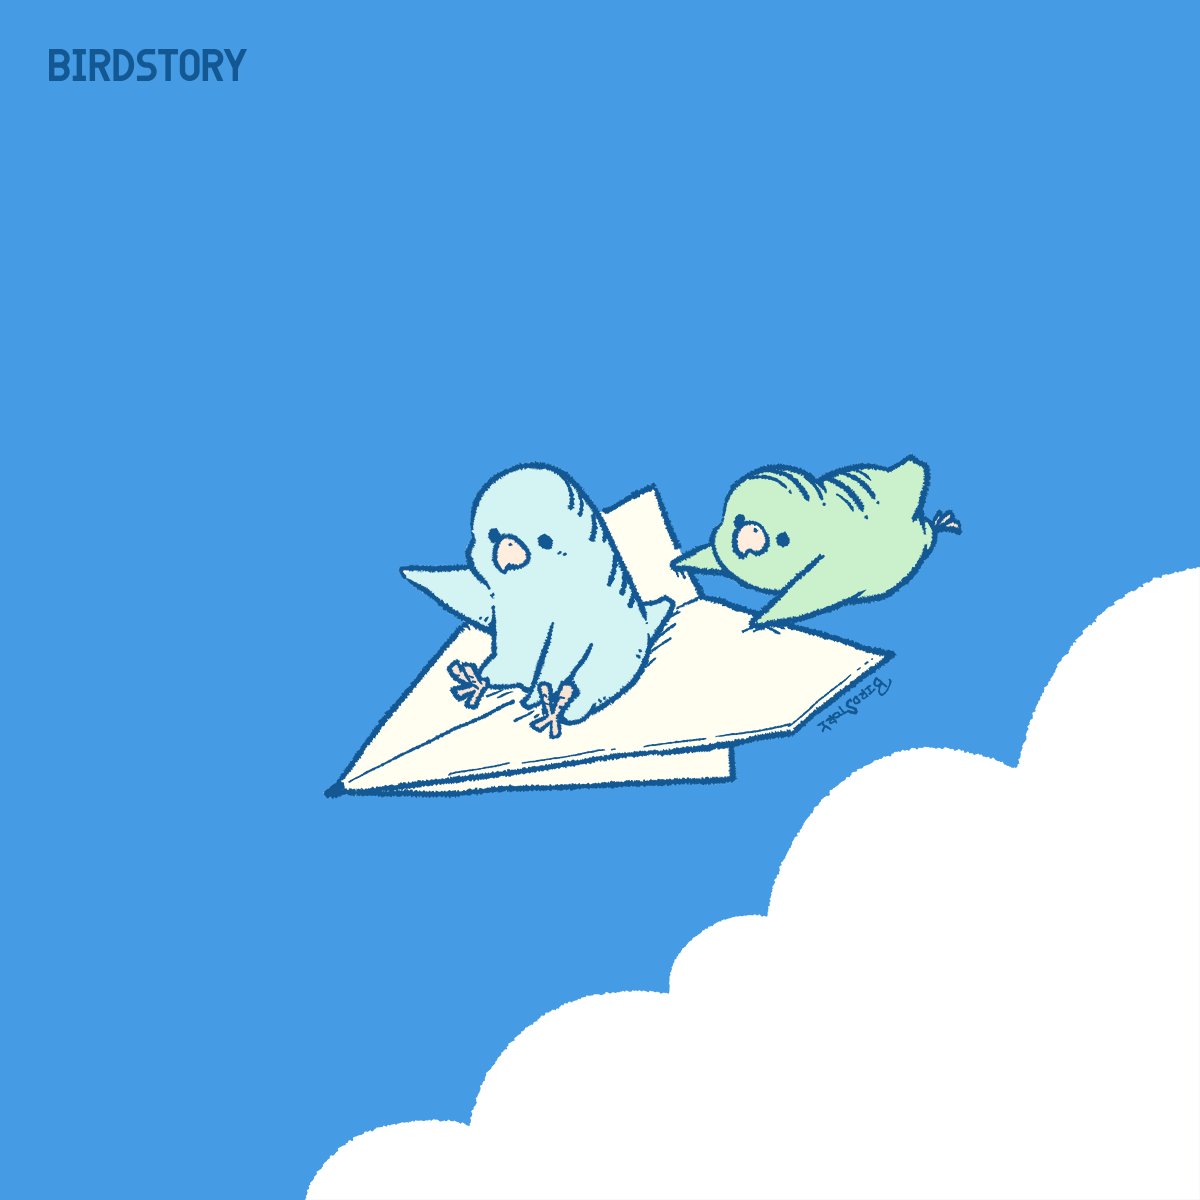 「おはようございます。本日は9月20日、空の日とのことです#BIRDSTORY #」|BIRDSTORYのイラスト